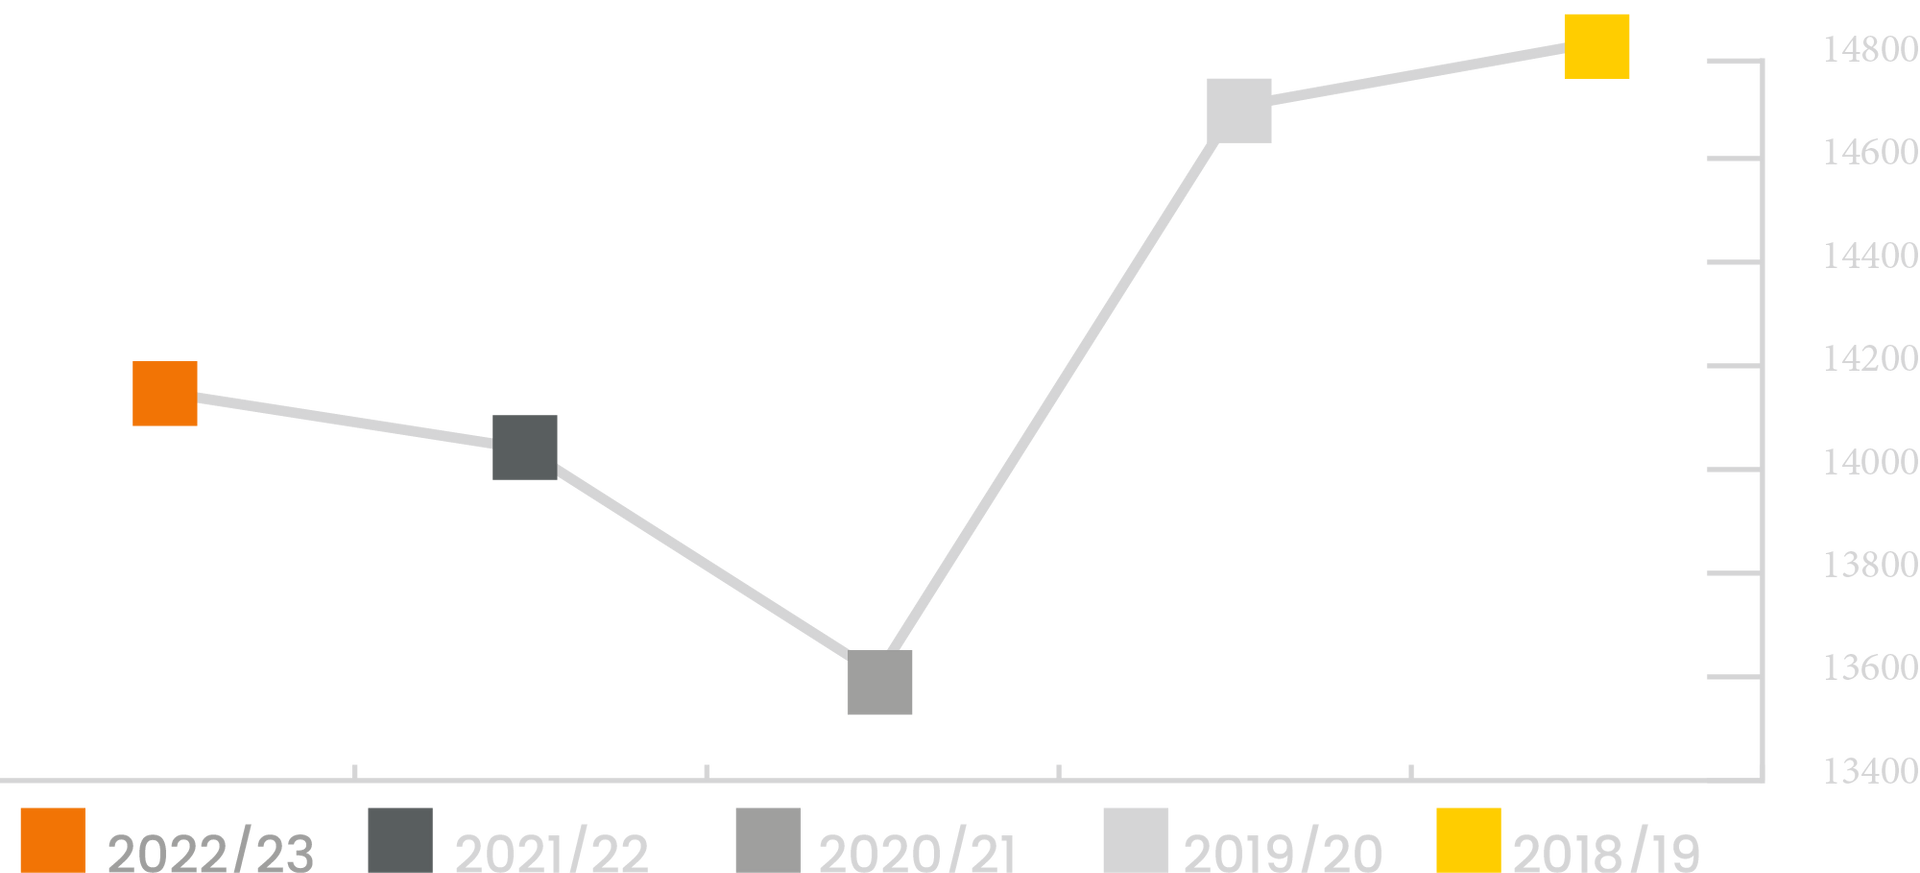 Un grafico a linee che mostra la pendenza di una linea che va su e giù.